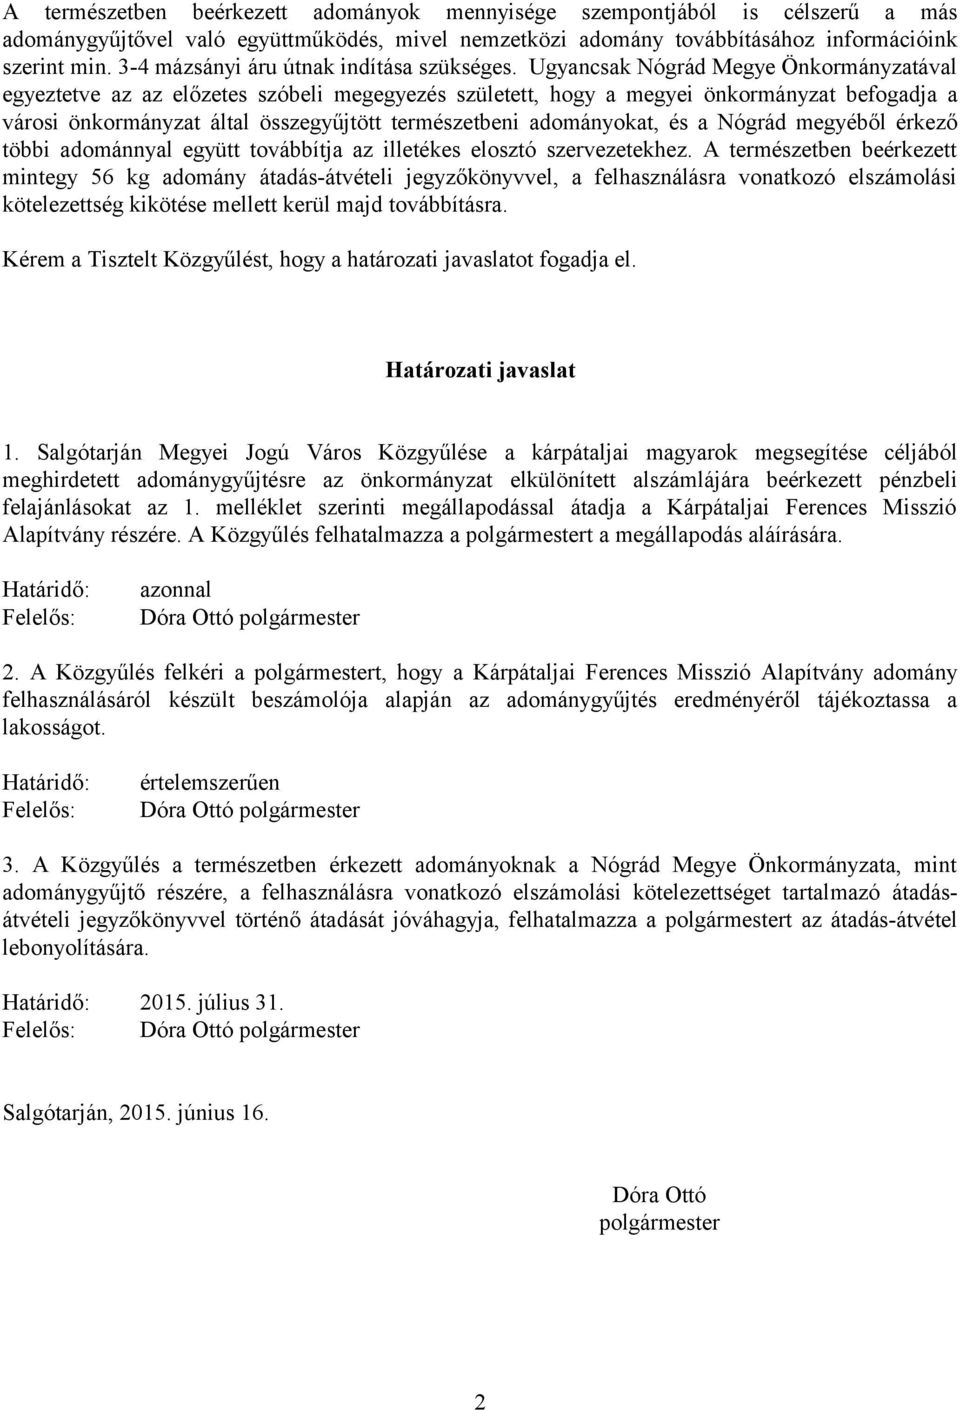 Ugyancsak Nógrád Megye Önkormányzatával egyeztetve az az előzetes szóbeli megegyezés született, hogy a megyei önkormányzat befogadja a városi önkormányzat által összegyűjtött természetbeni